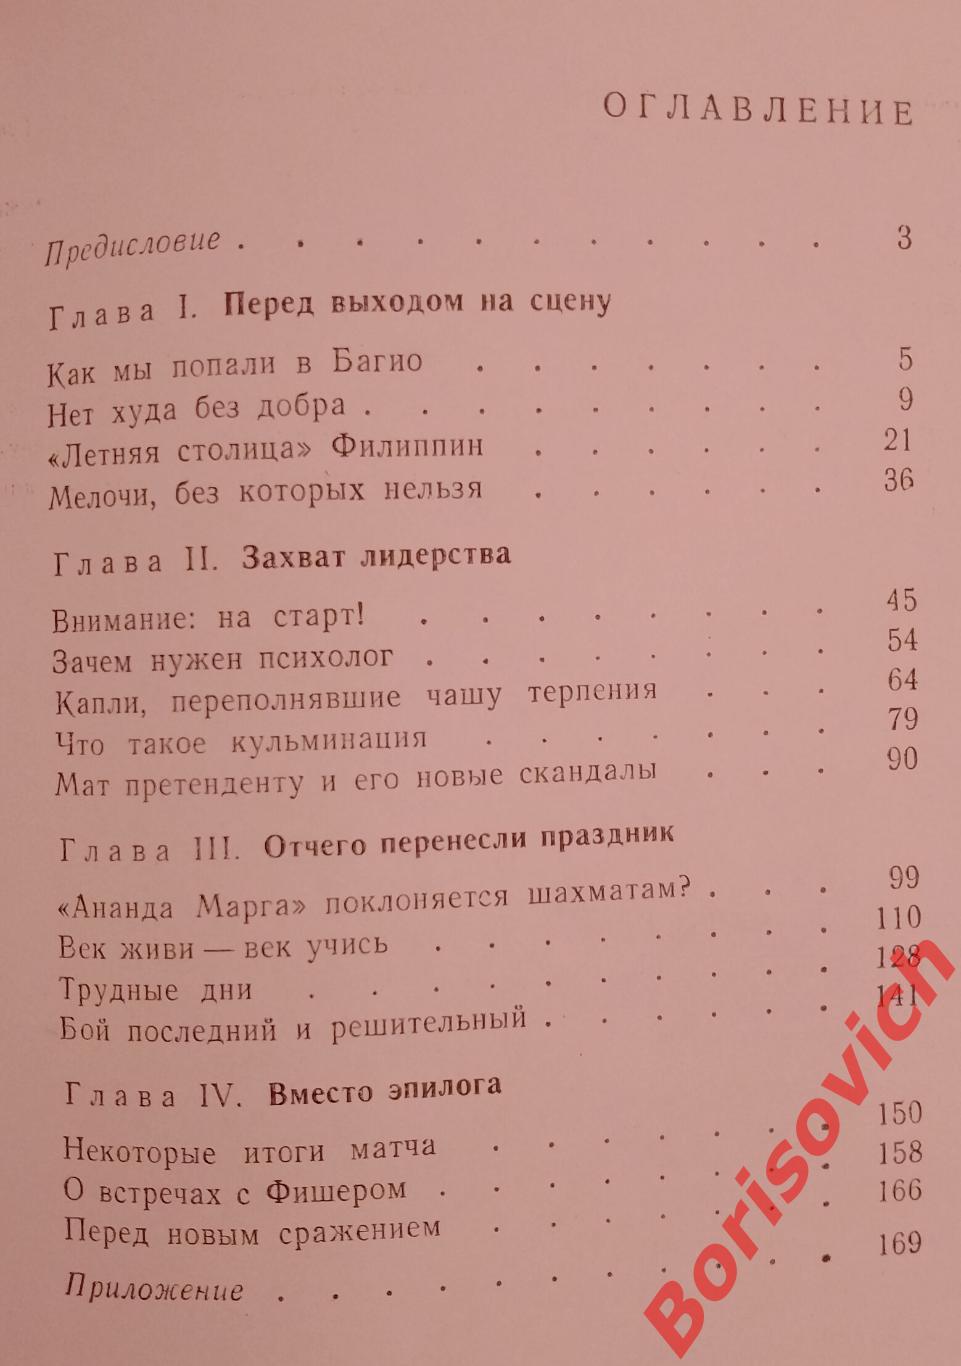 А. Карпов В ДАЛЁКОМ БАГИО 1981 г 192 страницы 2